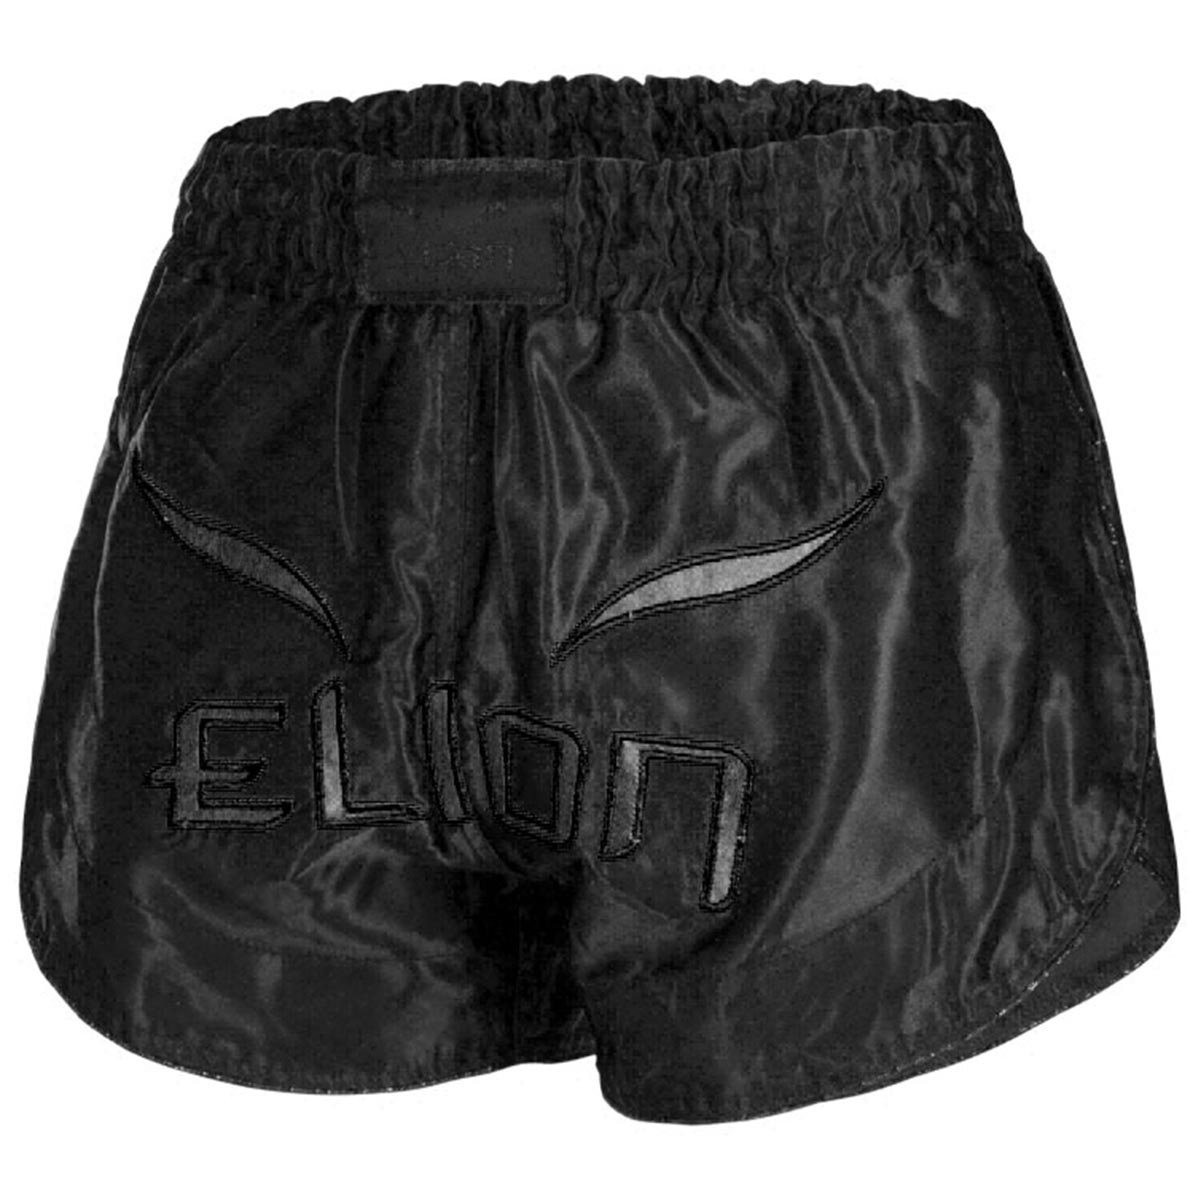 Elion Muay Thai Shorts, Origins, schwarz-schwarz